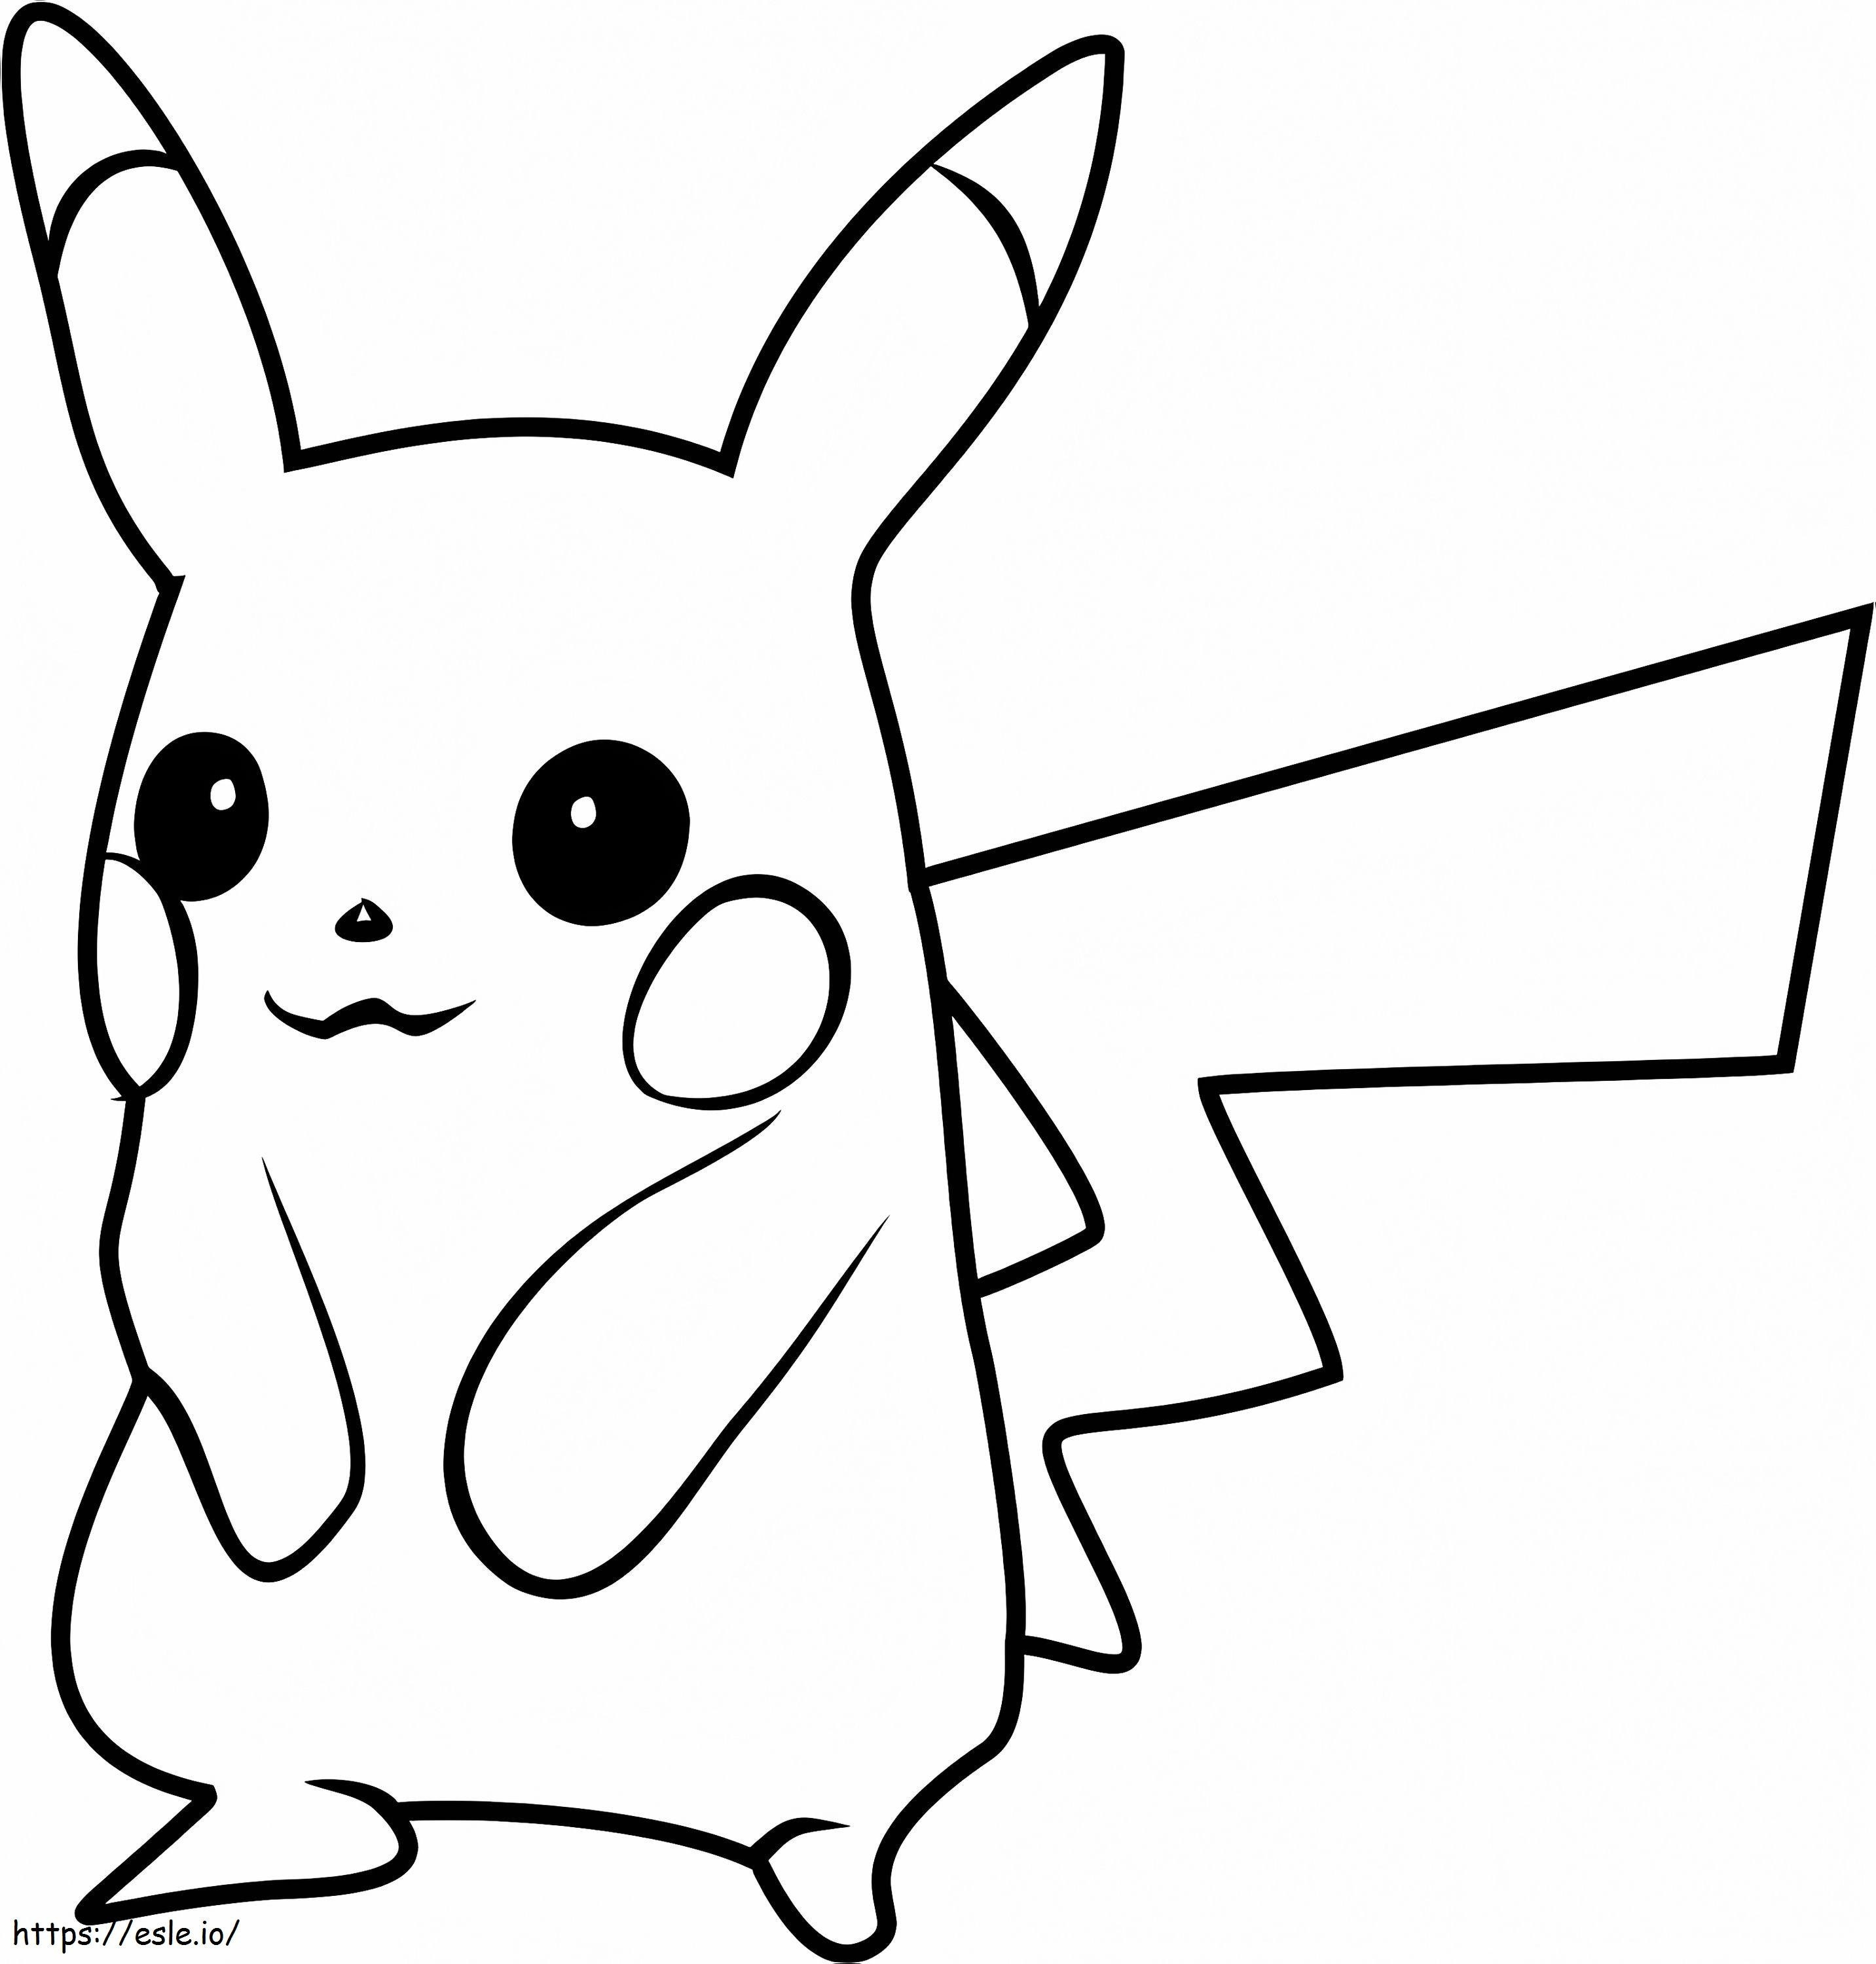  Pikachu Pokémon Go A4 para colorir